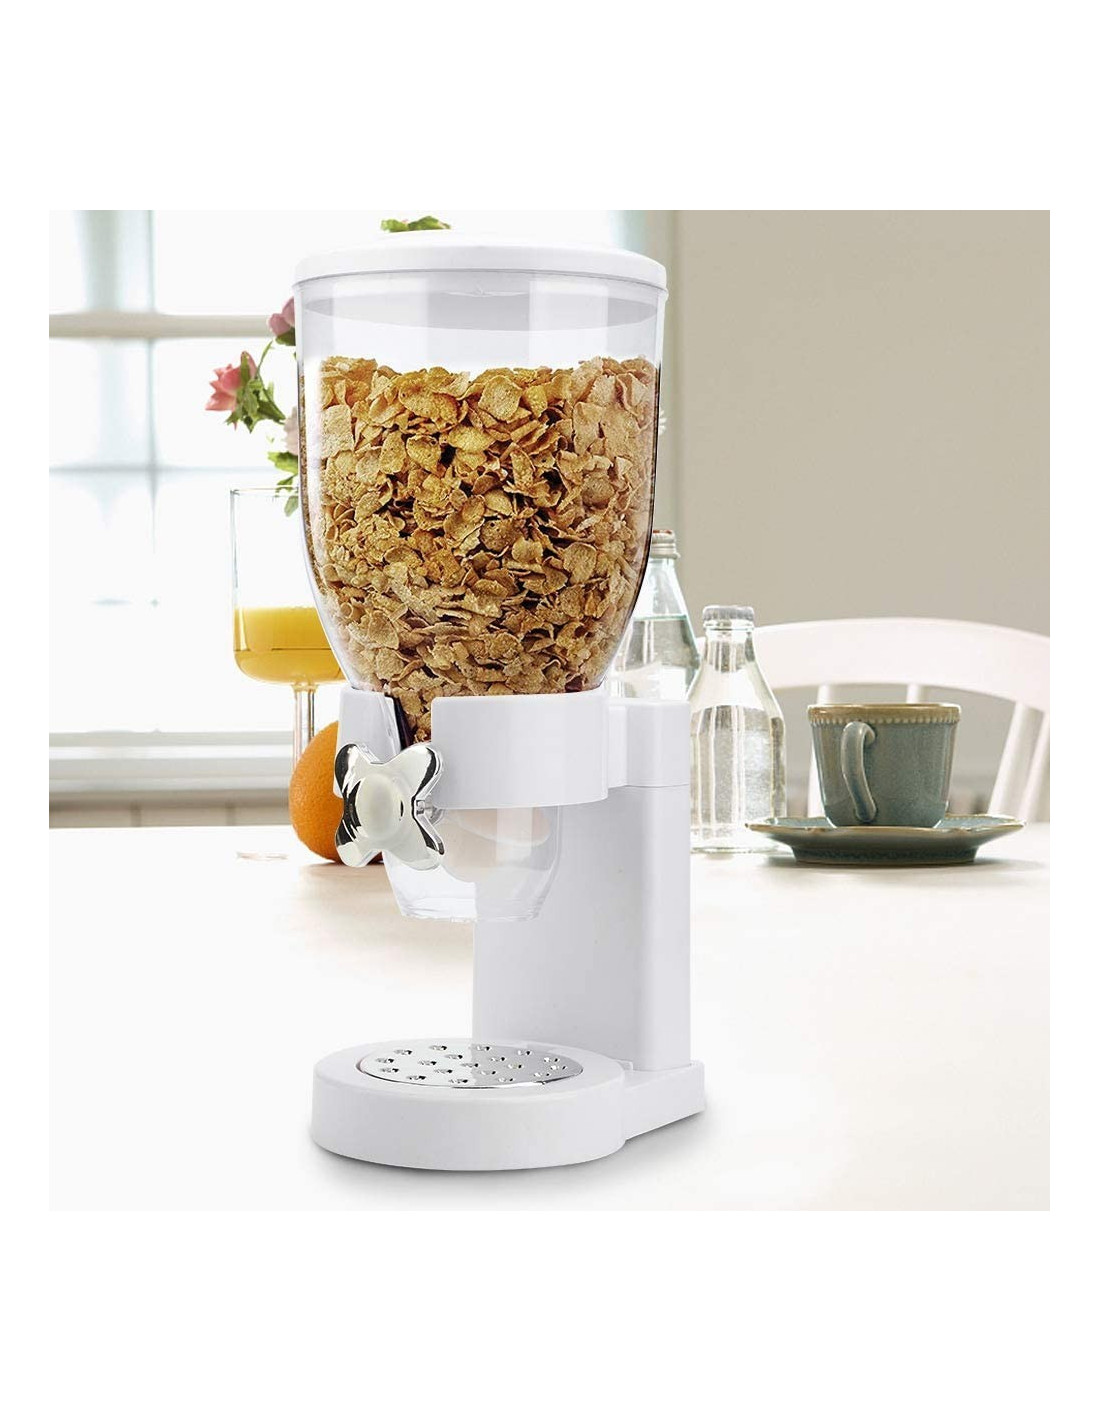 Dispensador de cereales – Dispensador de alimentos secos fácil de usar,  recipientes de cereales perfectos como dulces, nueces, arroz, granola